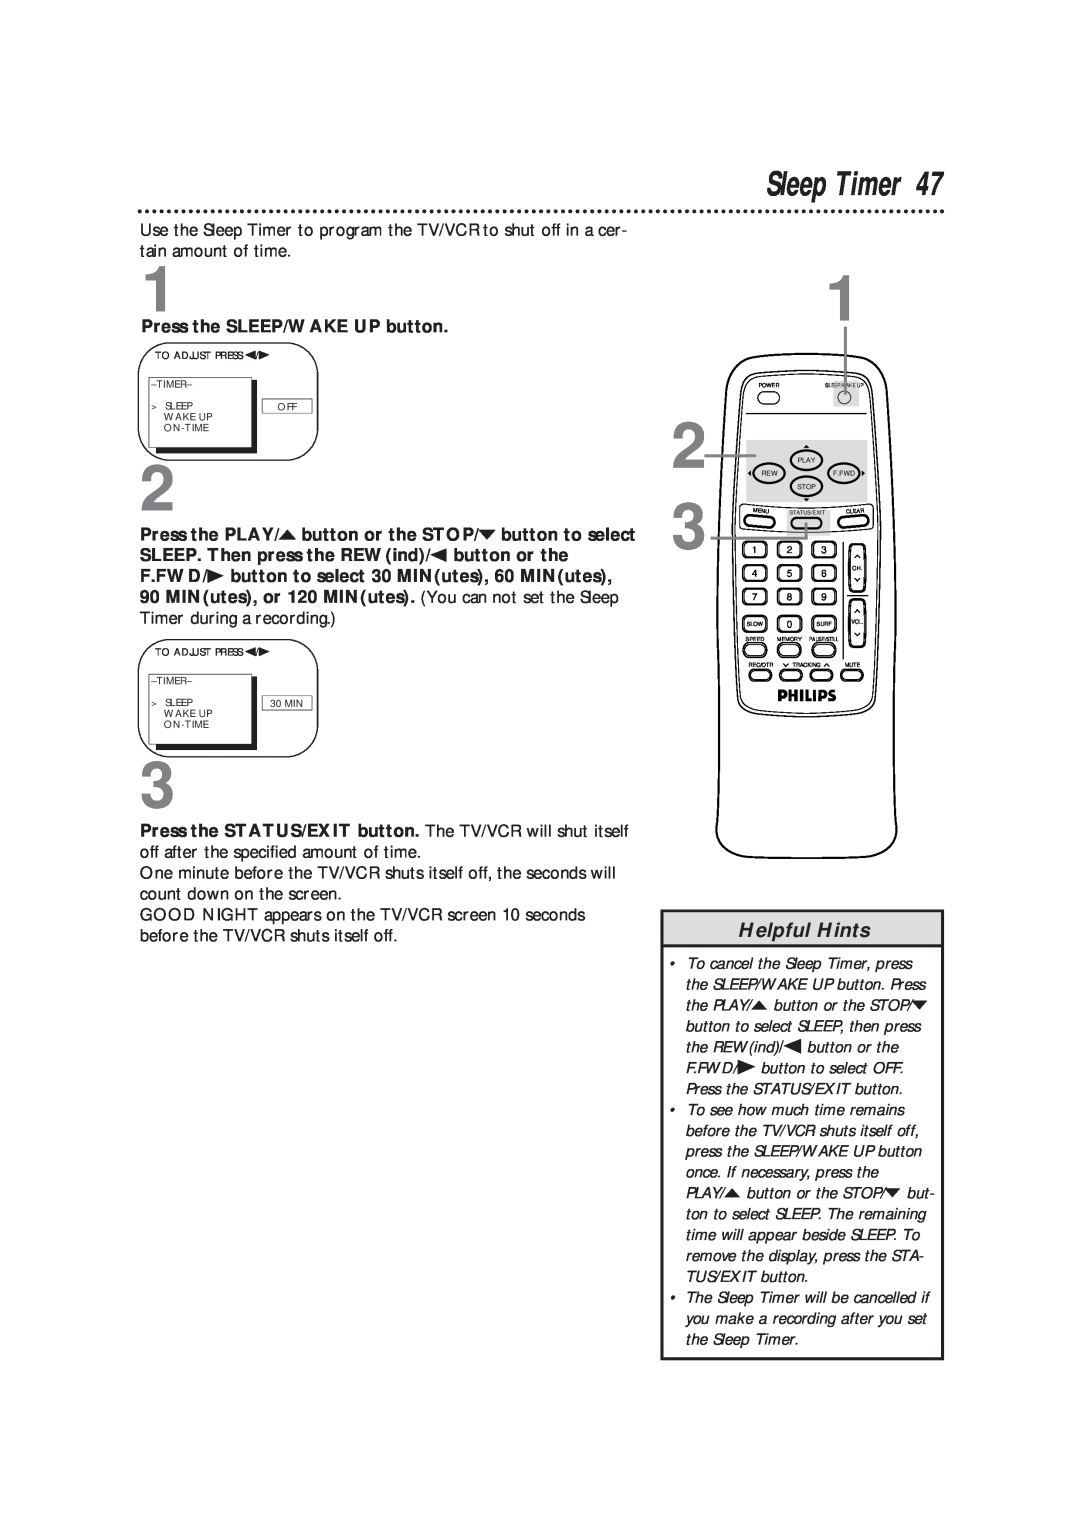 Magnavox CCB193AT owner manual Helpful Hints, the Sleep Timer 